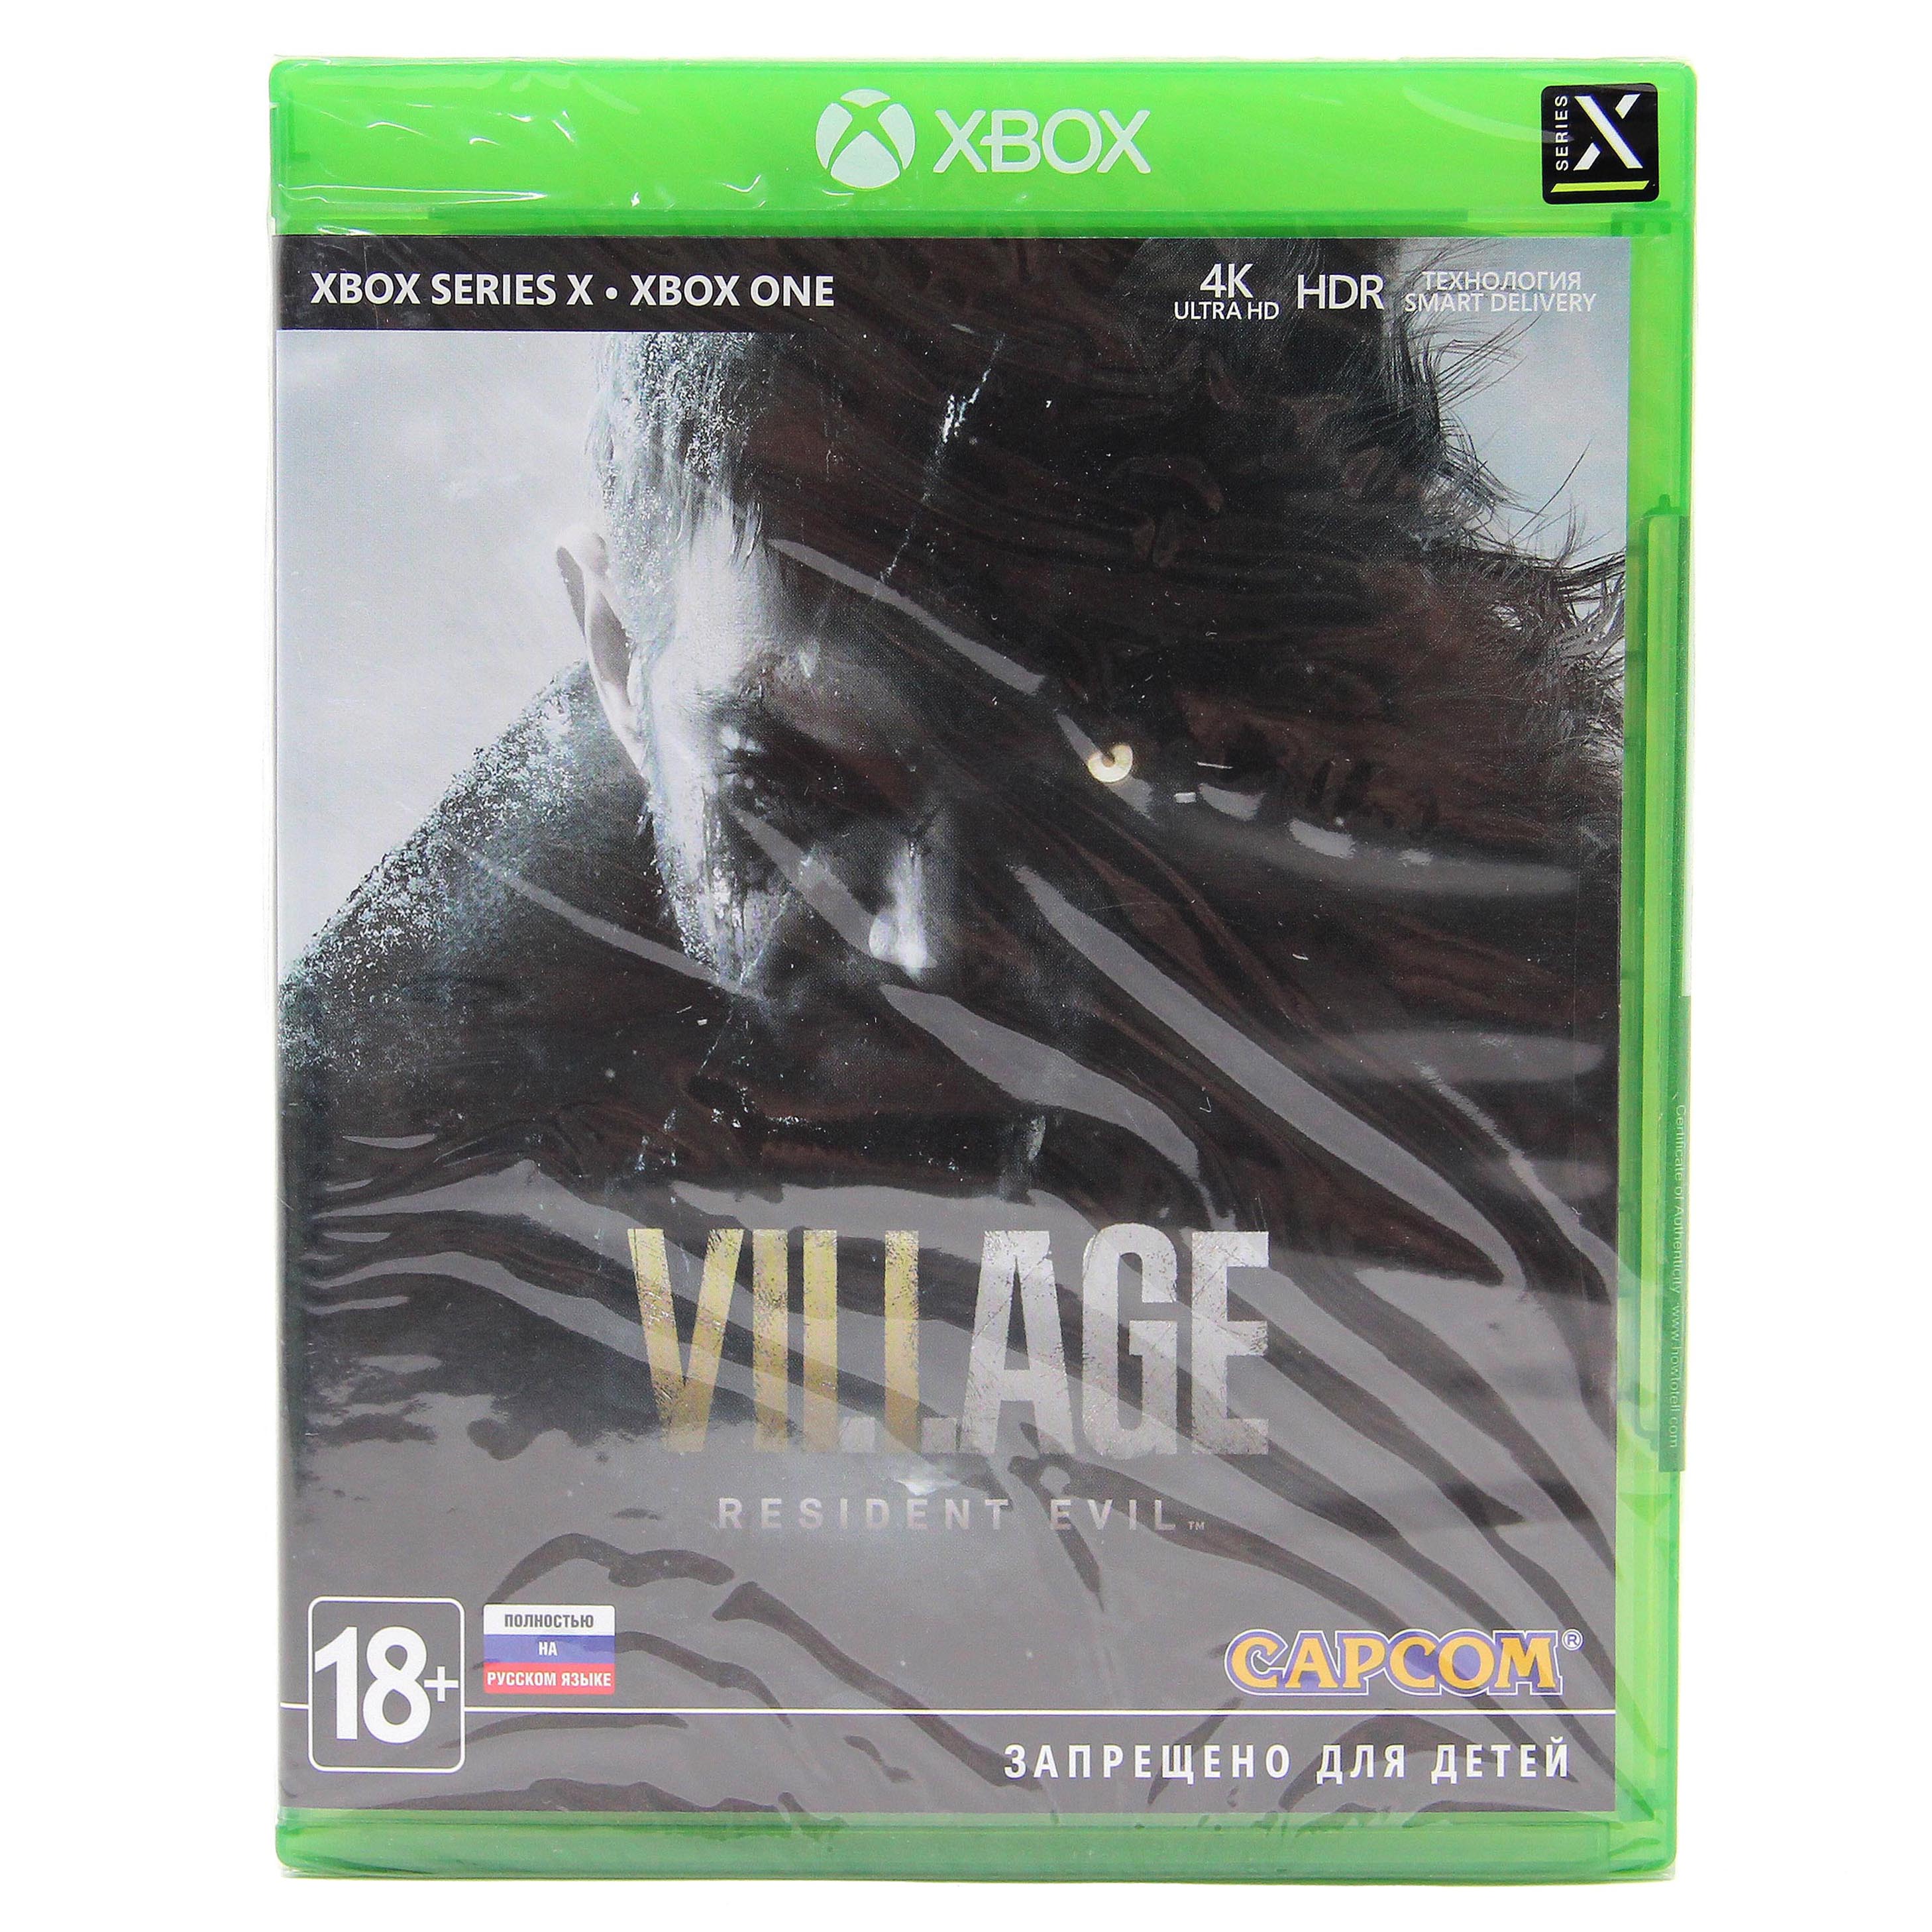 Игра Resident Evil 8 Village (Xbox One, Xbox Series X, русские субтитры)